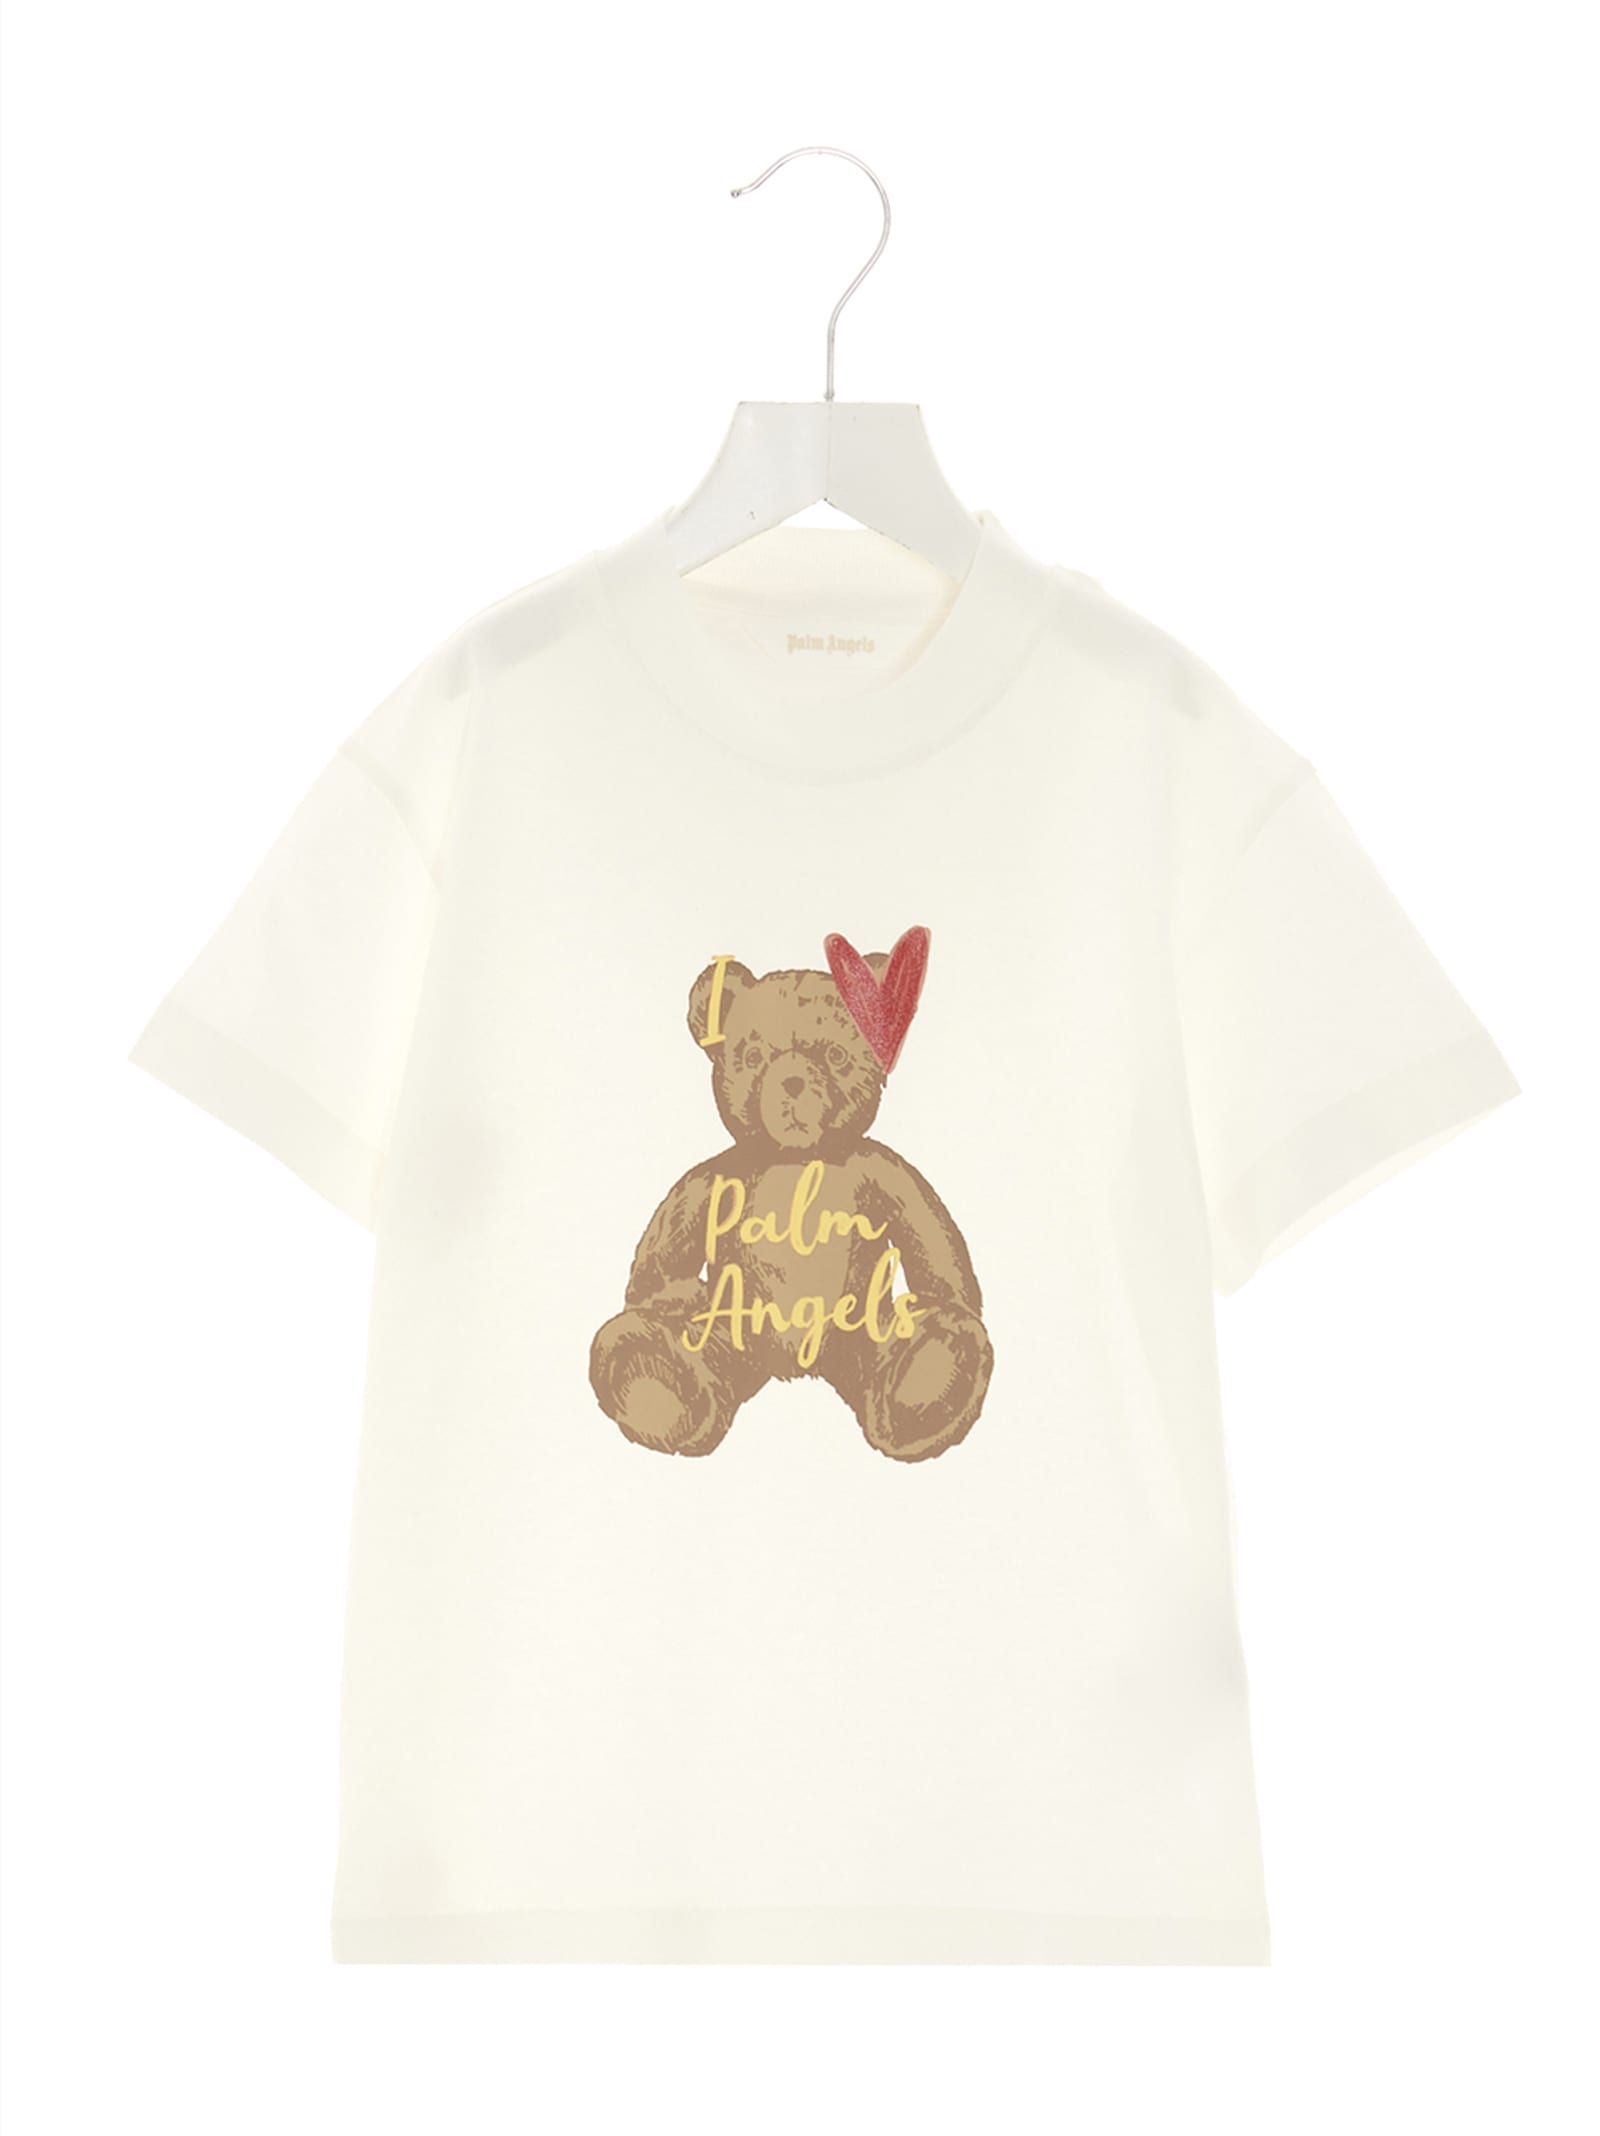 Palm Angels i Love T-shirt